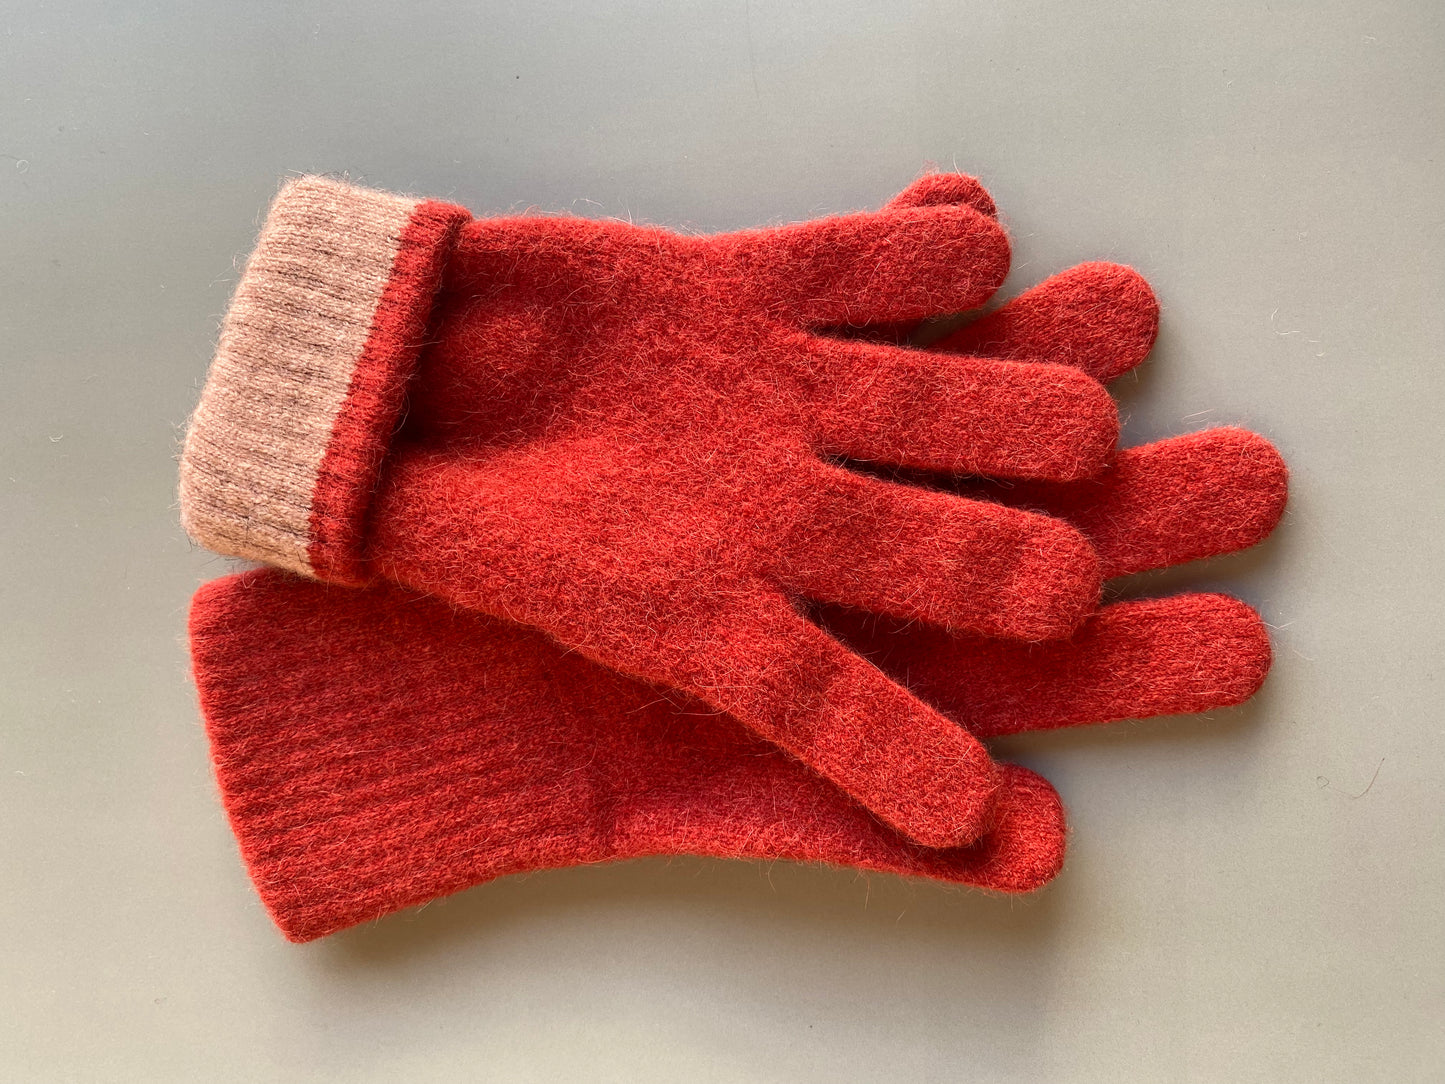 Gloves: Warm Red / Orange Gloves (Ruby): Possum & Merino Wool, Made in New Zealand